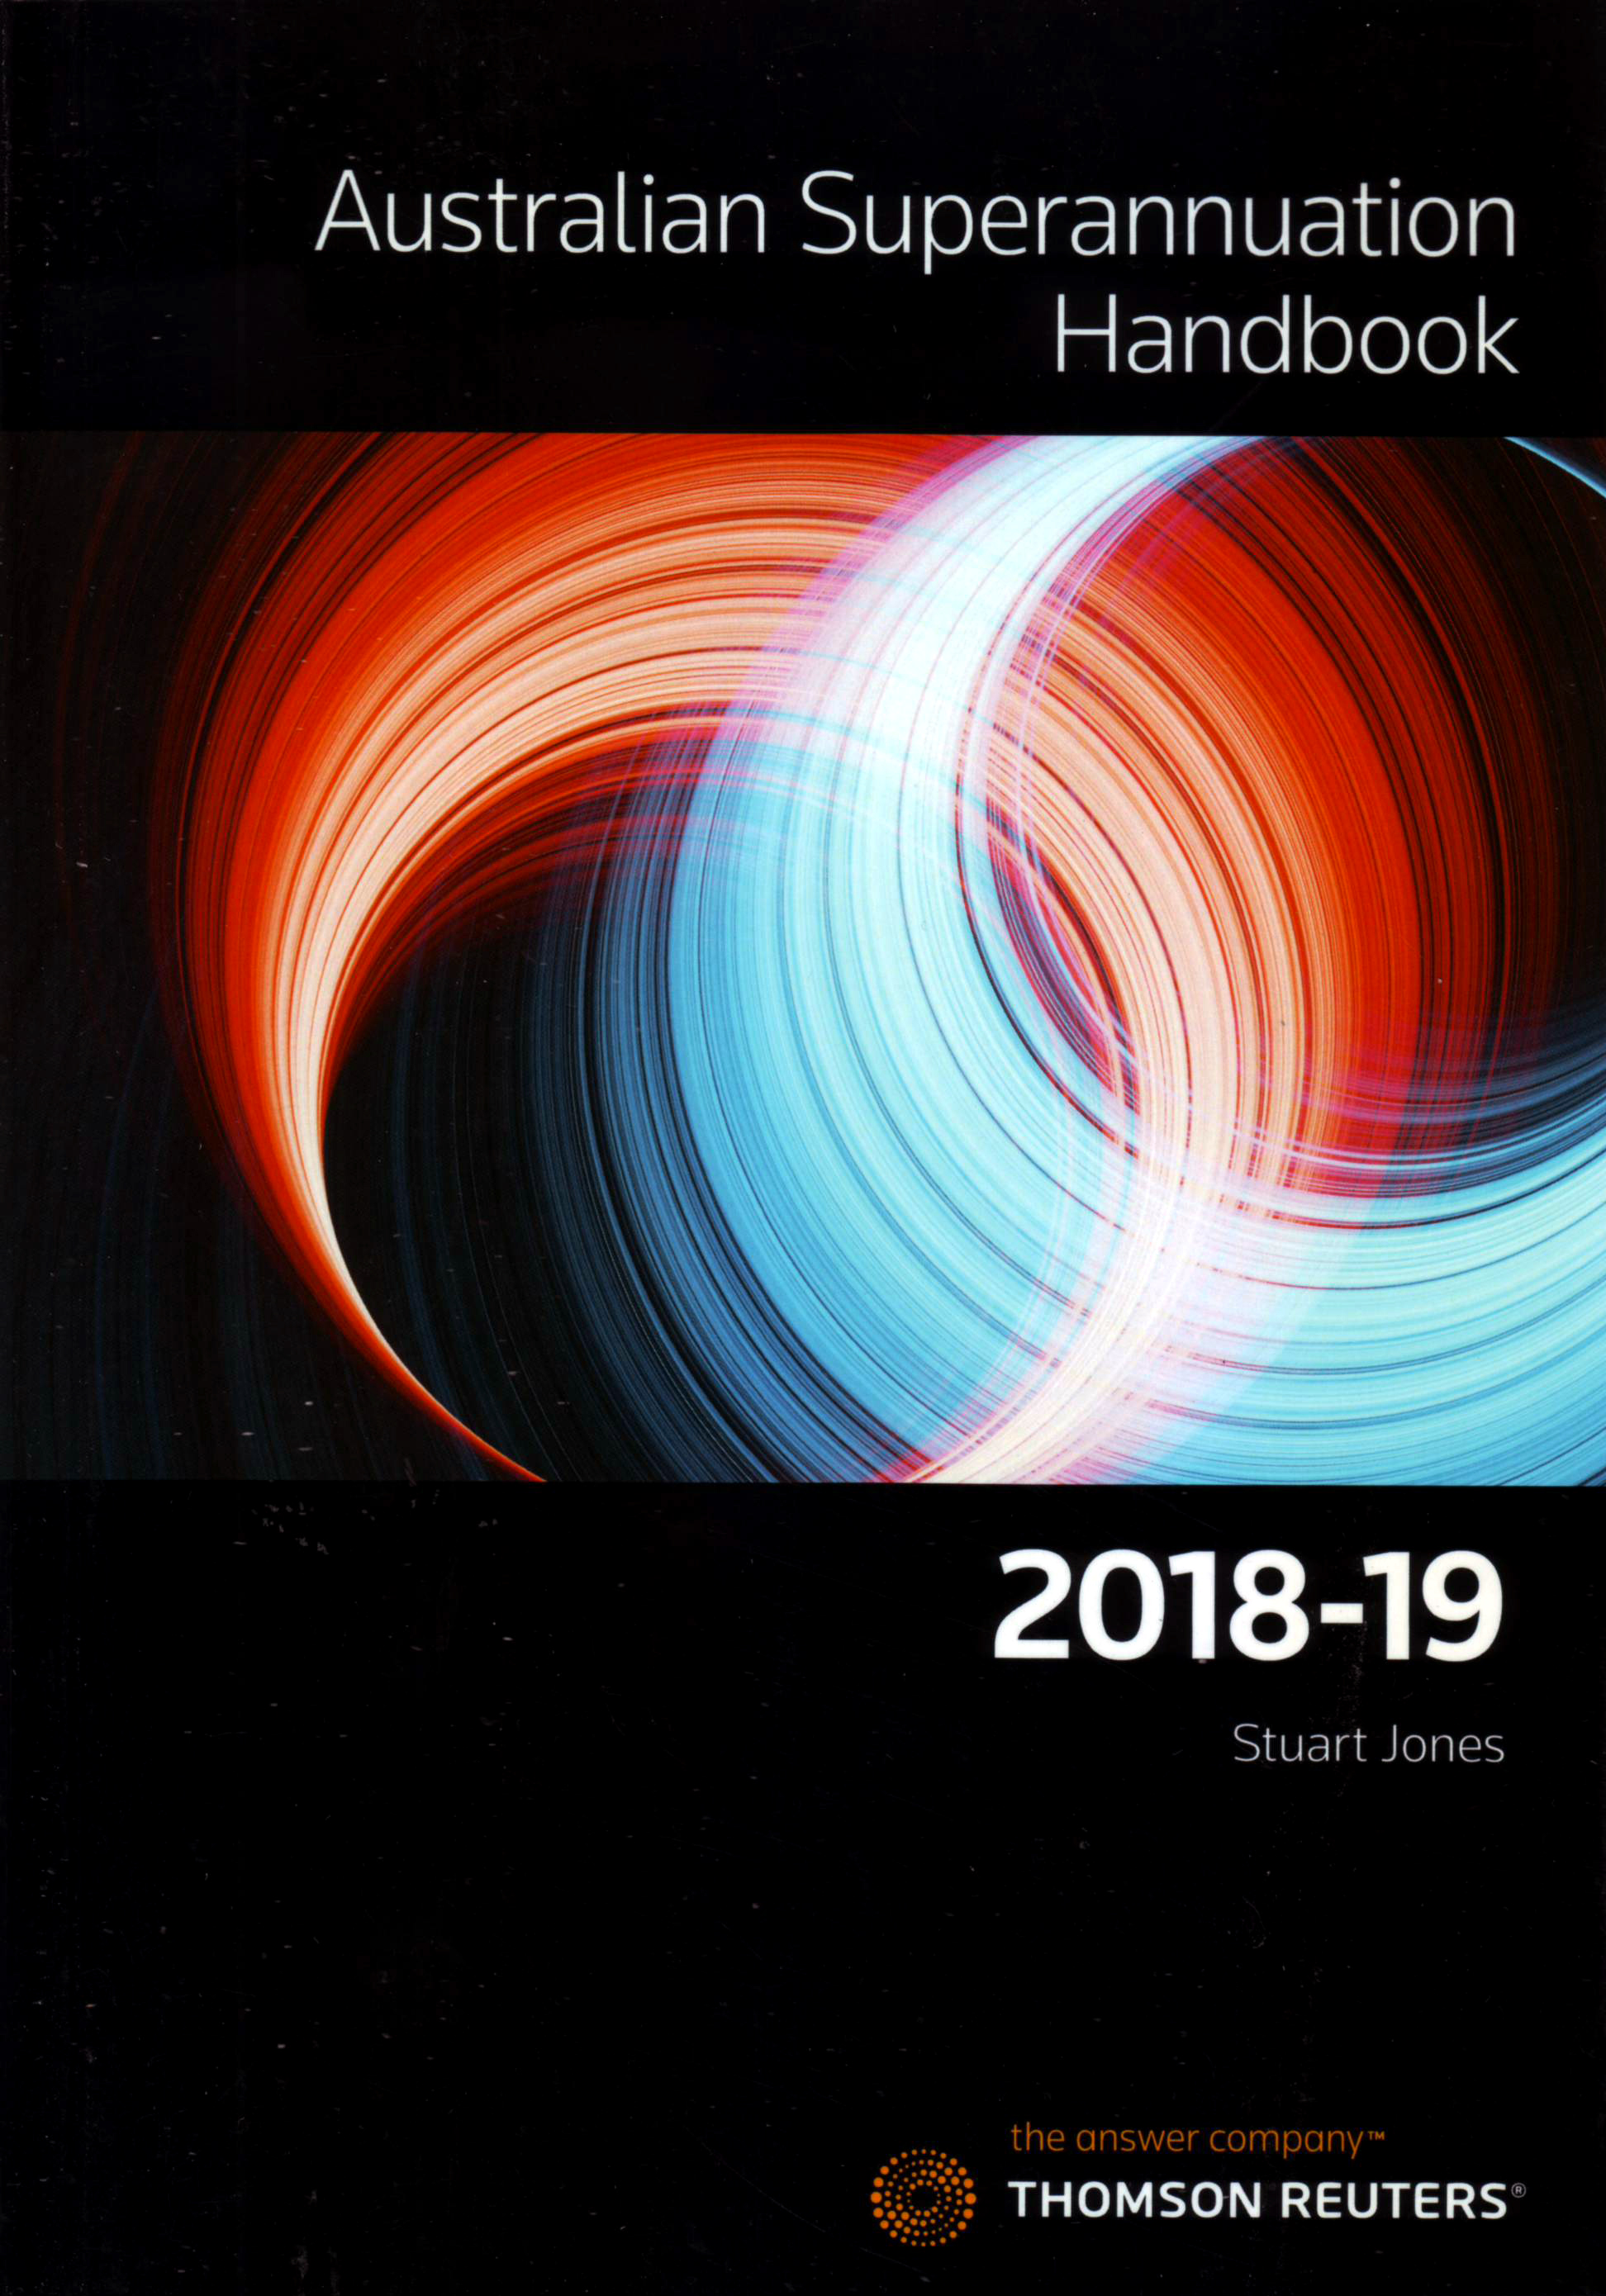 Australian Superannuation Handbook 2018-19